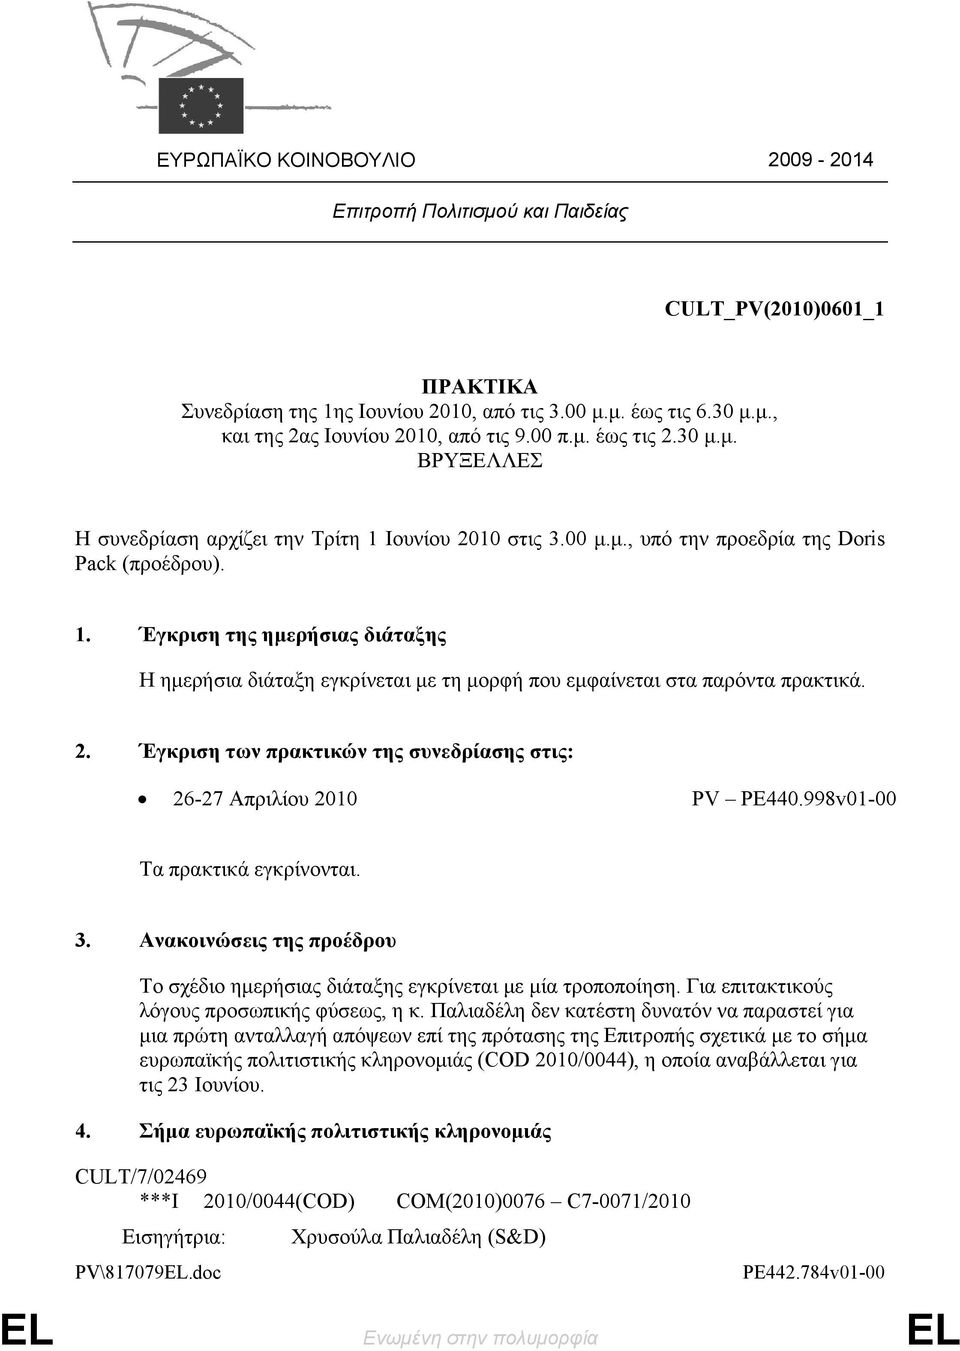 2. Έγκριση των πρακτικών της συνεδρίασης στις: 26-27 Απριλίου 2010 PV PE440.998v01-00 Τα πρακτικά εγκρίνονται. 3. Ανακοινώσεις της προέδρου Το σχέδιο ημερήσιας διάταξης εγκρίνεται με μία τροποποίηση.